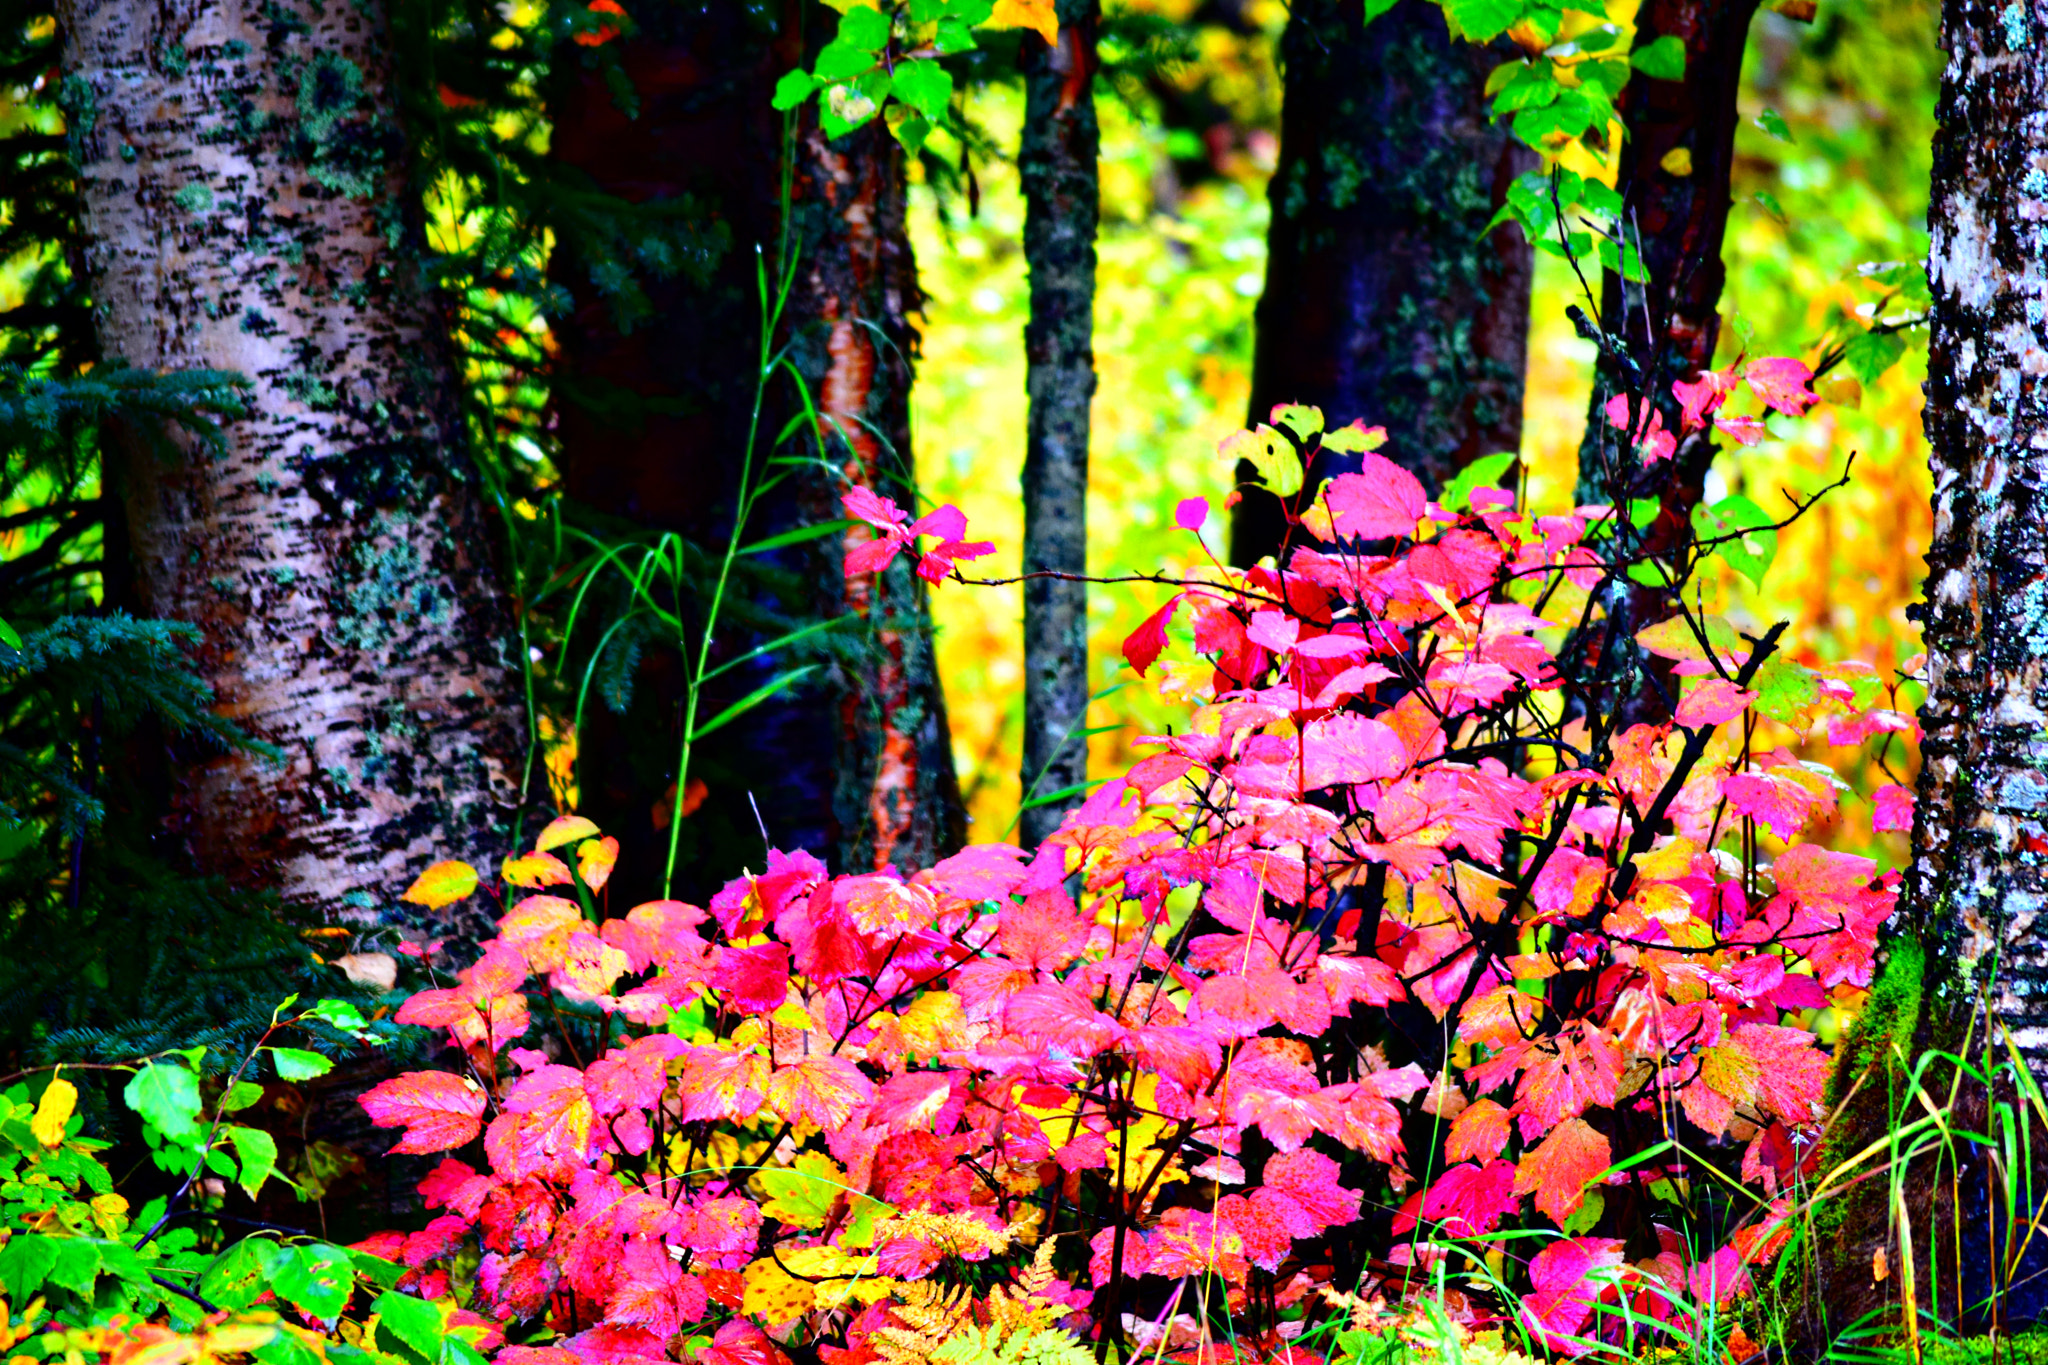 Nikon D3300 + AF Zoom-Nikkor 35-80mm f/4-5.6D sample photo. Alaska fall colors photography